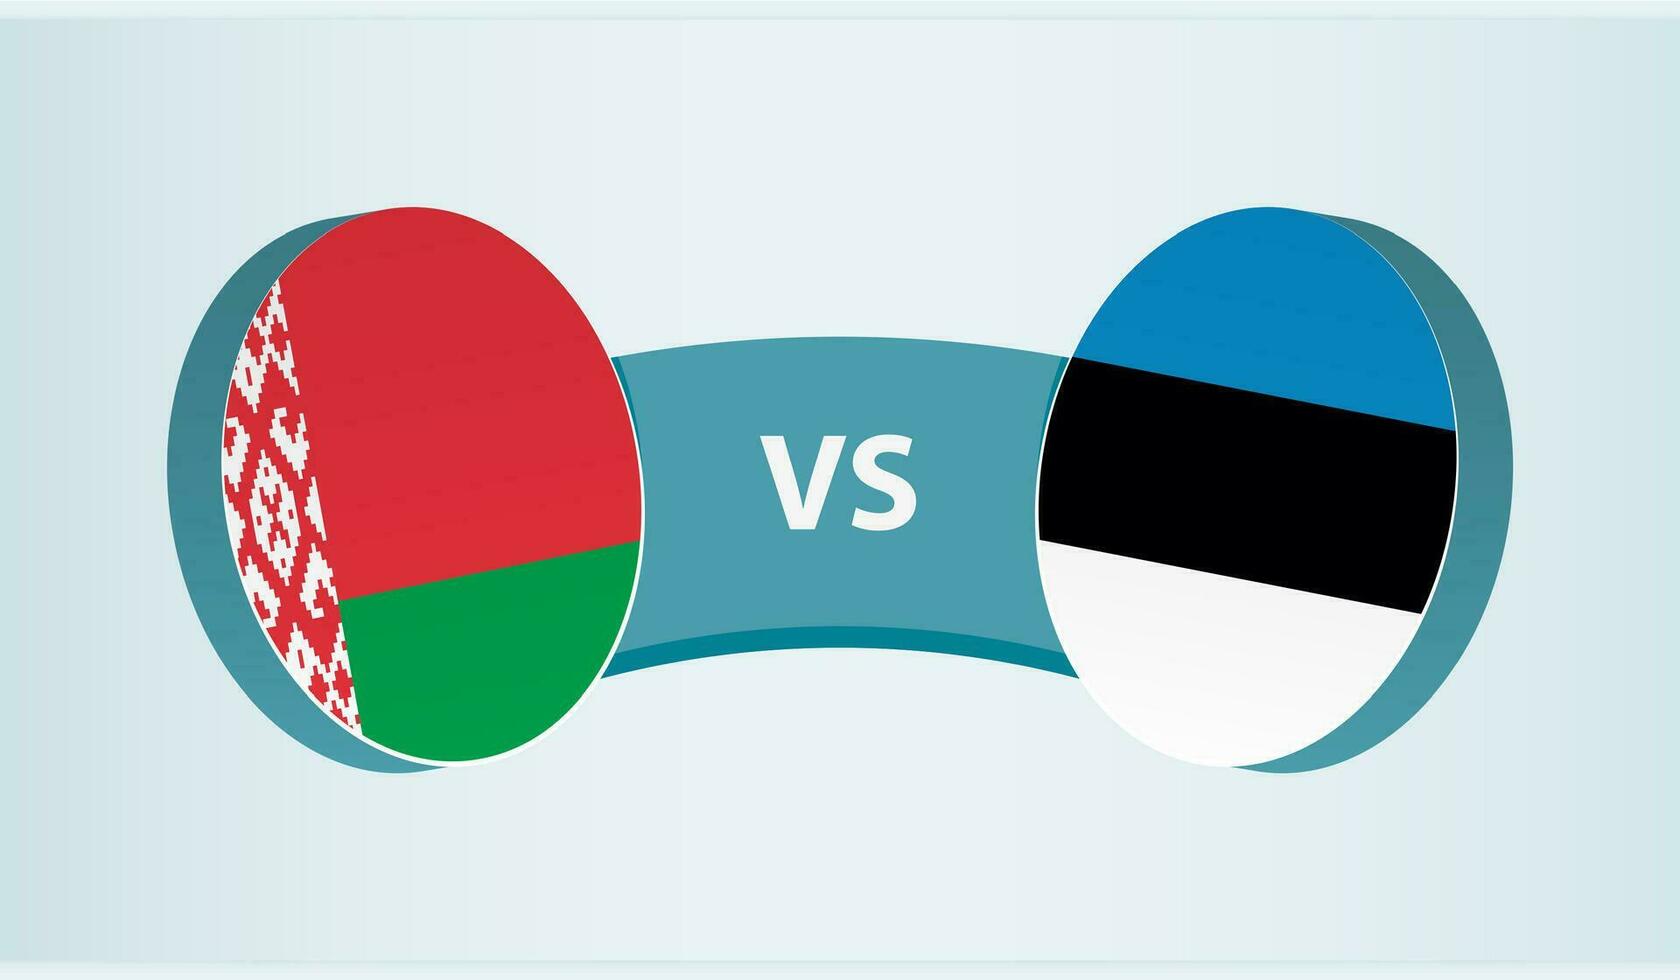 Belarus versus Estonia, team sports competition concept. vector